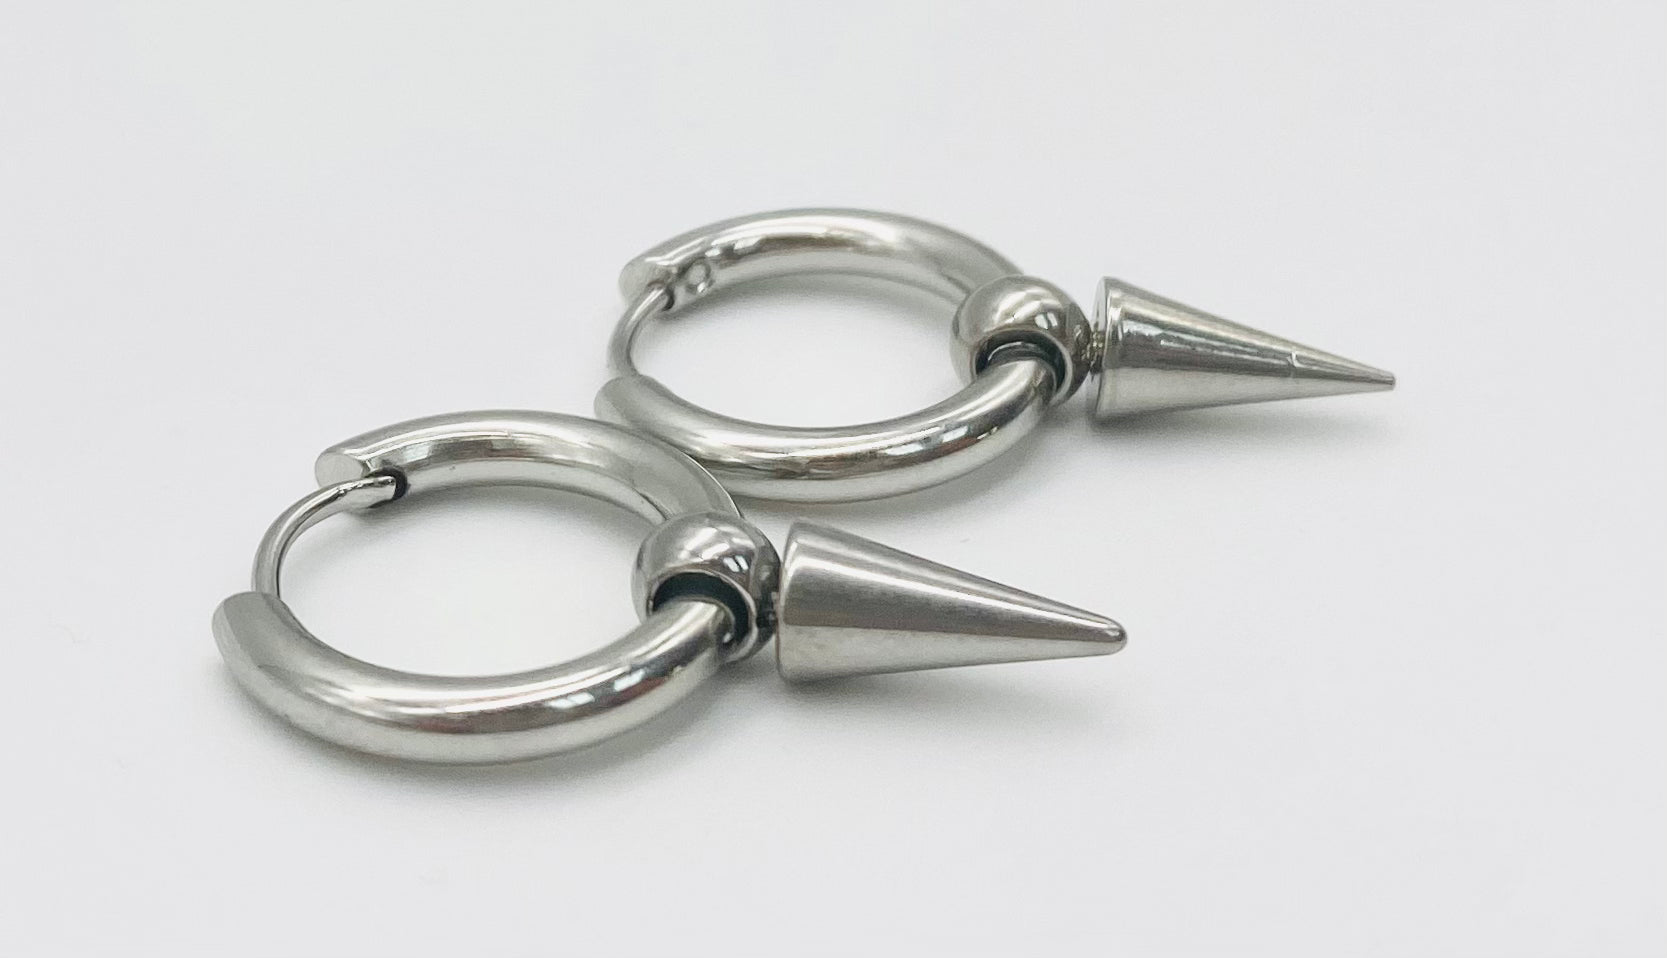 Silver Spiked Hoop Earrings